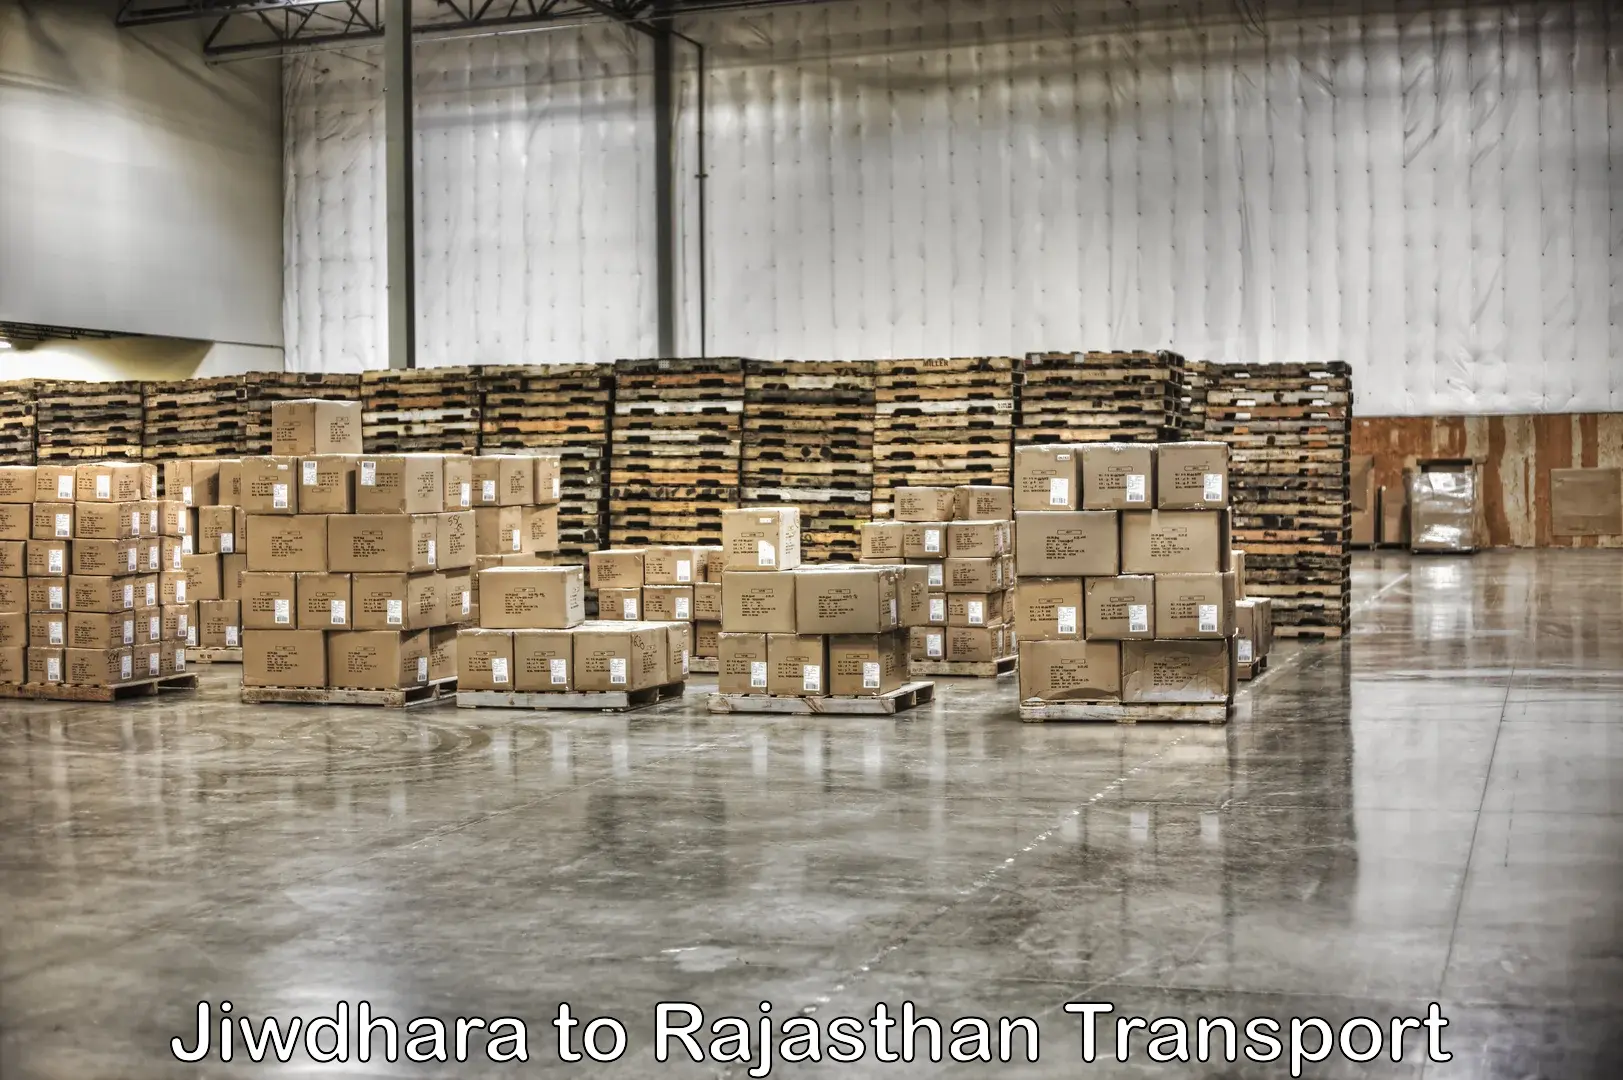 Truck transport companies in India Jiwdhara to Pindwara